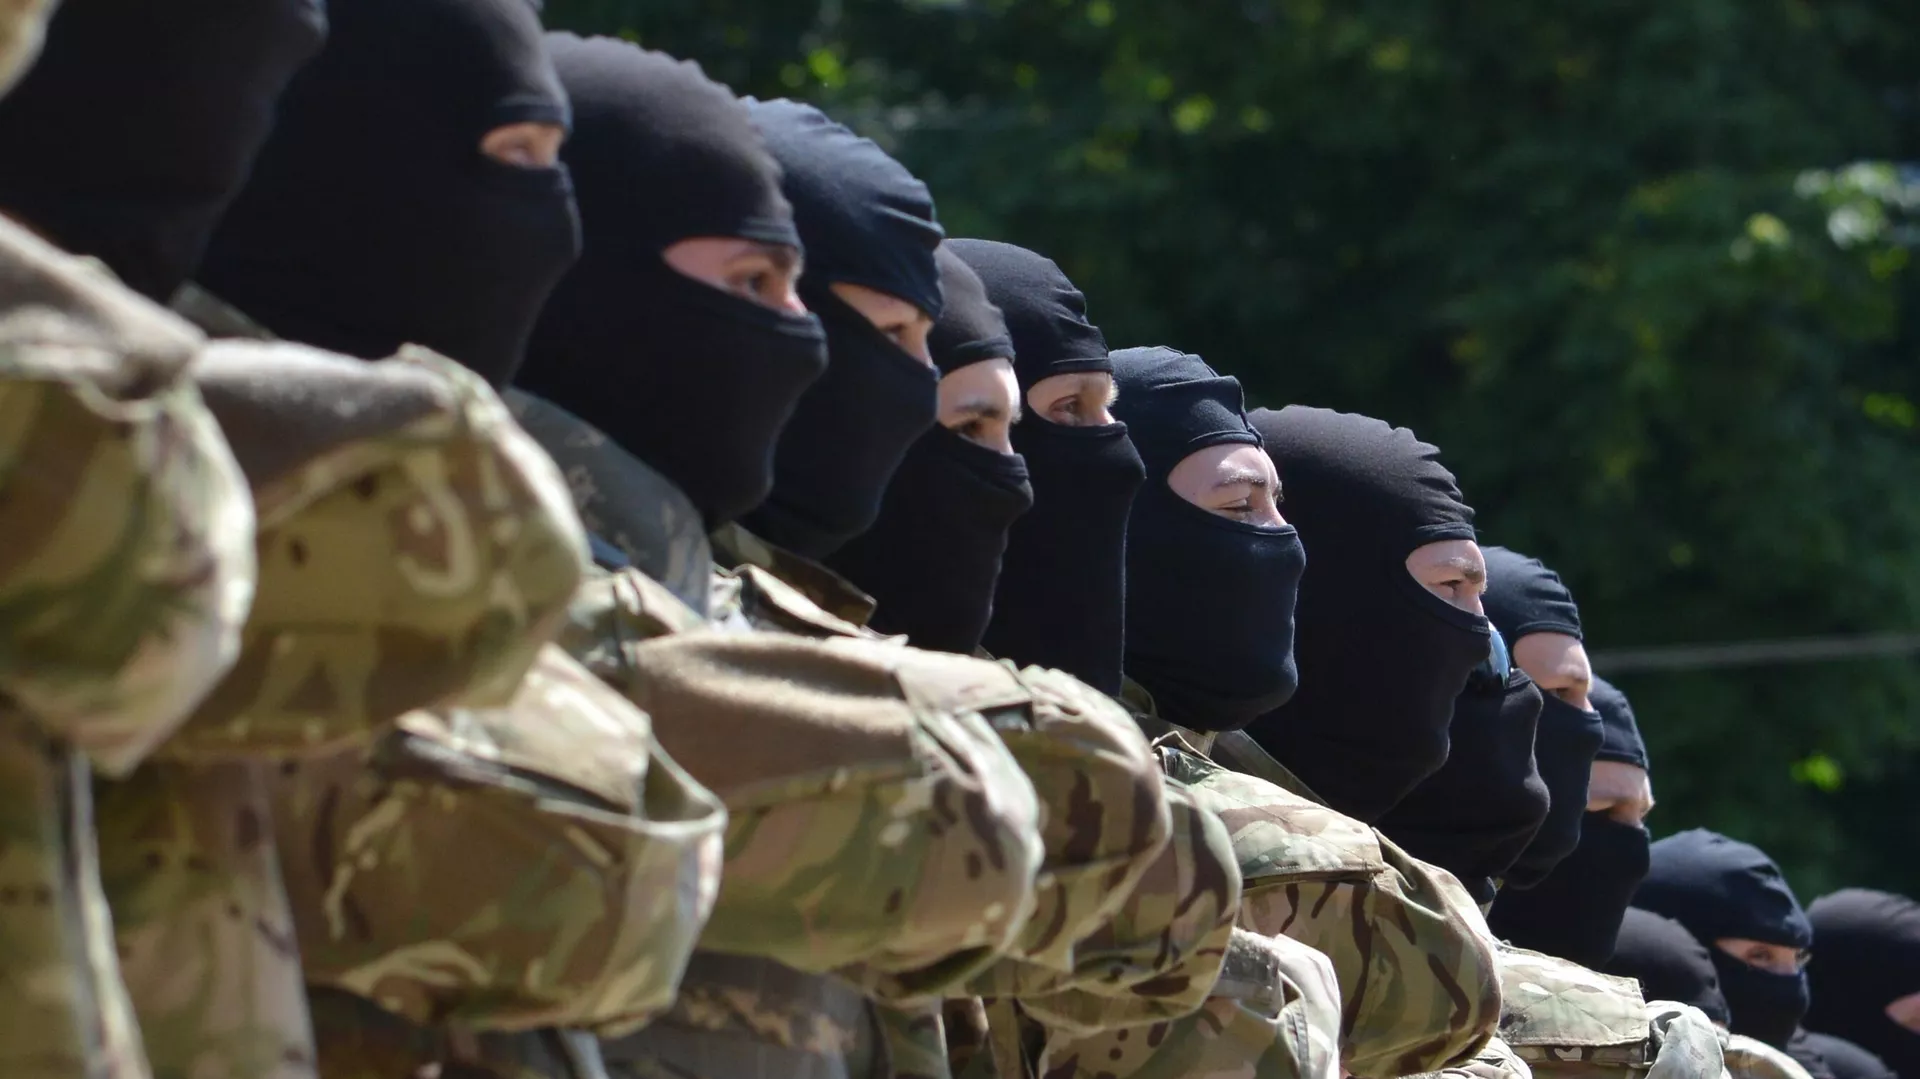  Revelan las atrocidades del batallón nacionalista ucraniano Azov en Donetsk y Lugansk